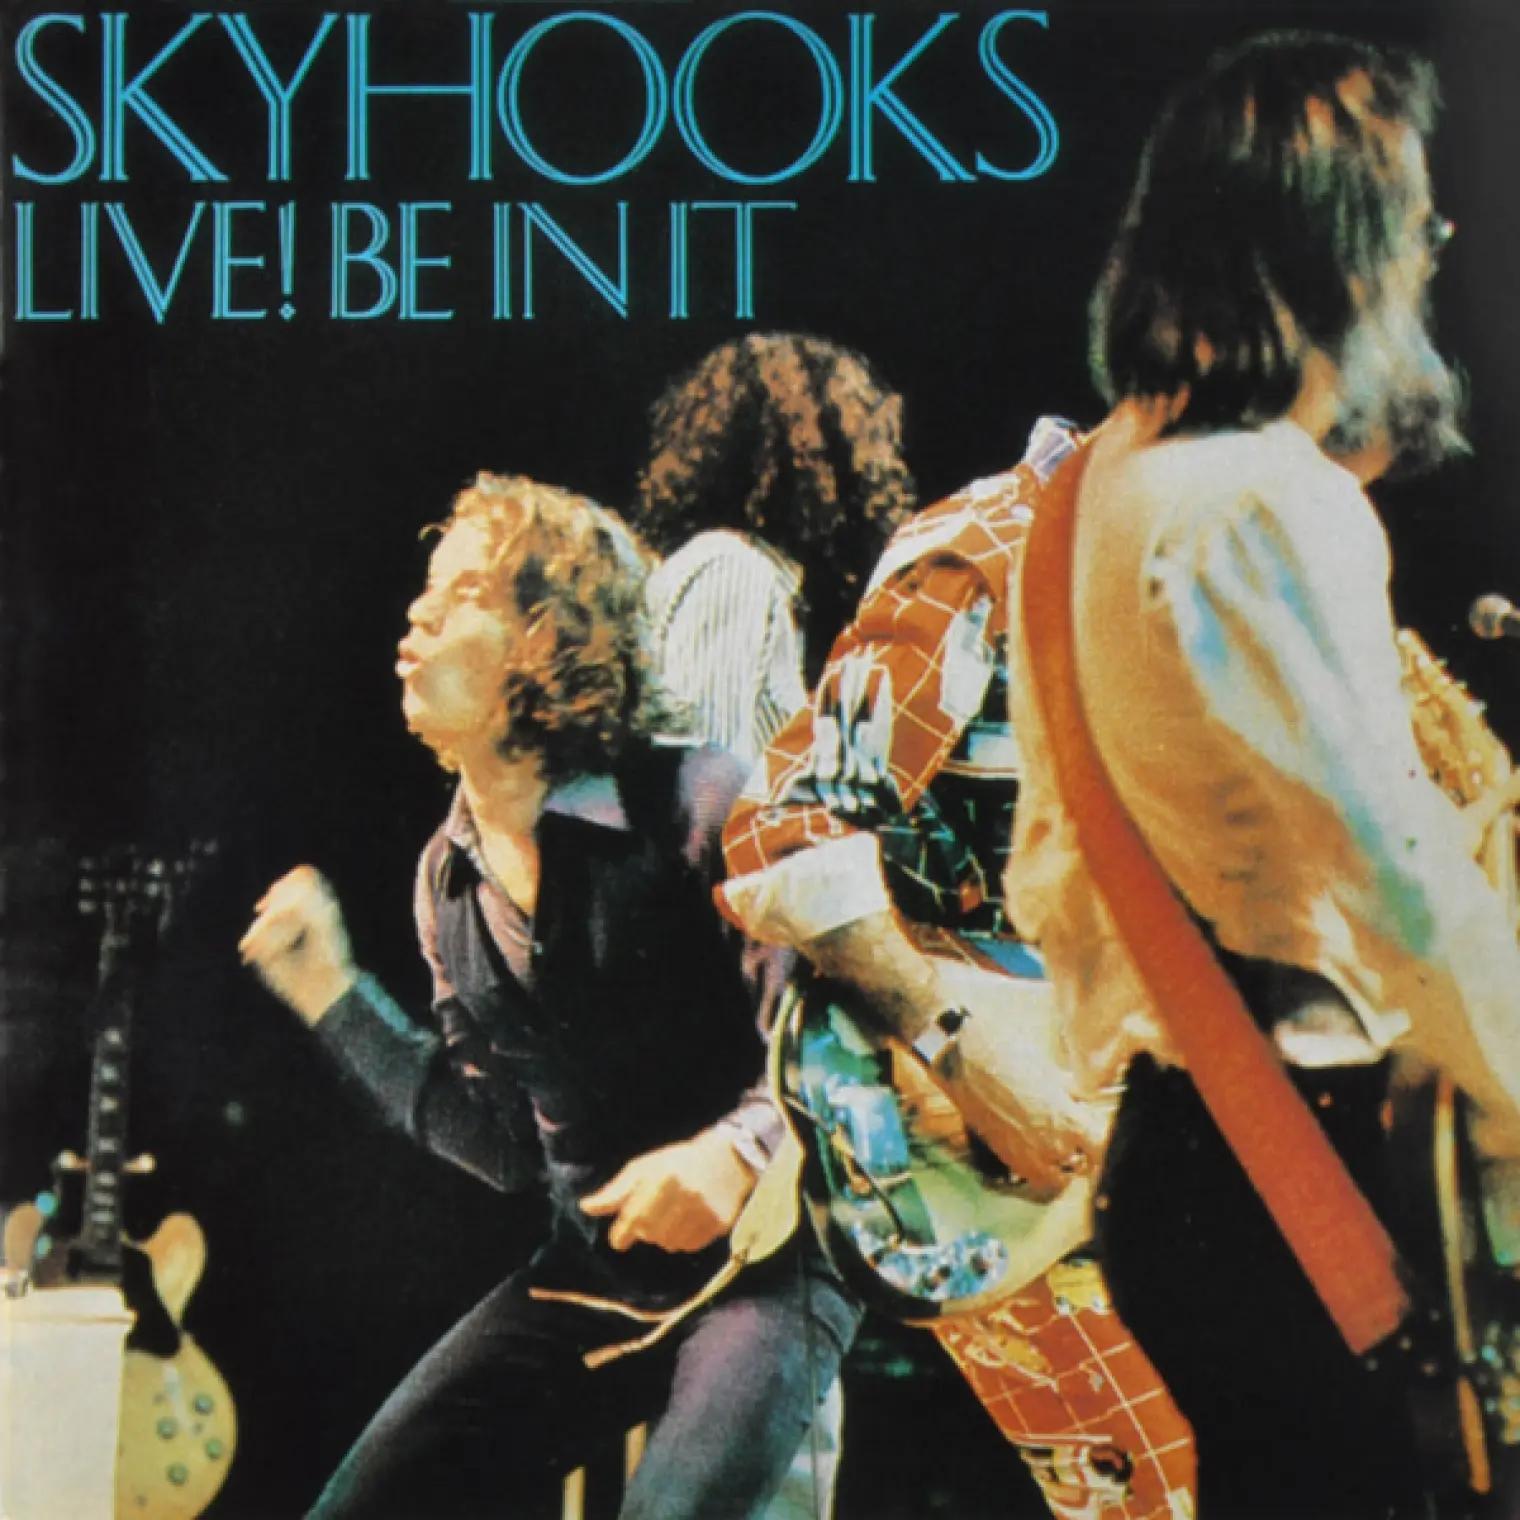 Live! Be In It -  Skyhooks 